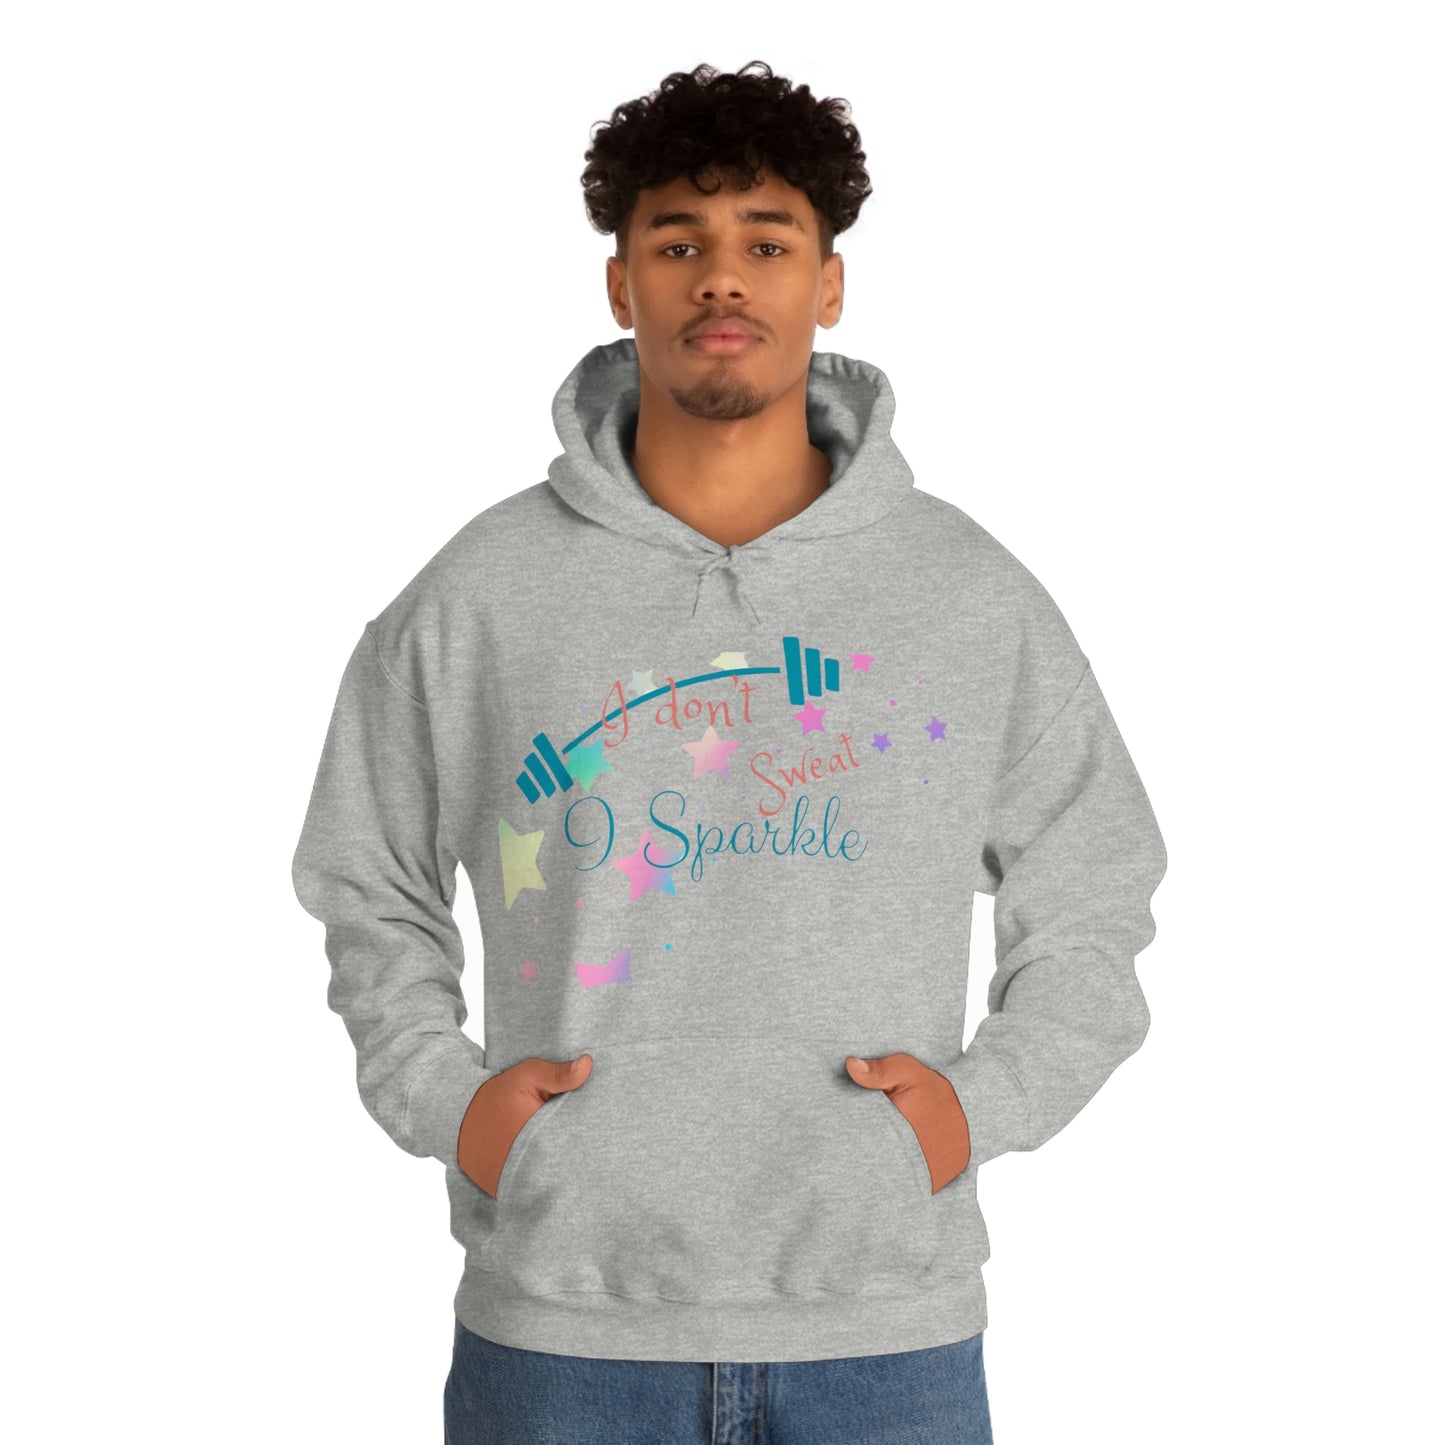 ‘I don’t sweat, I Sparkle’  Unisex Heavy Blend™ Hooded Sweatshirt